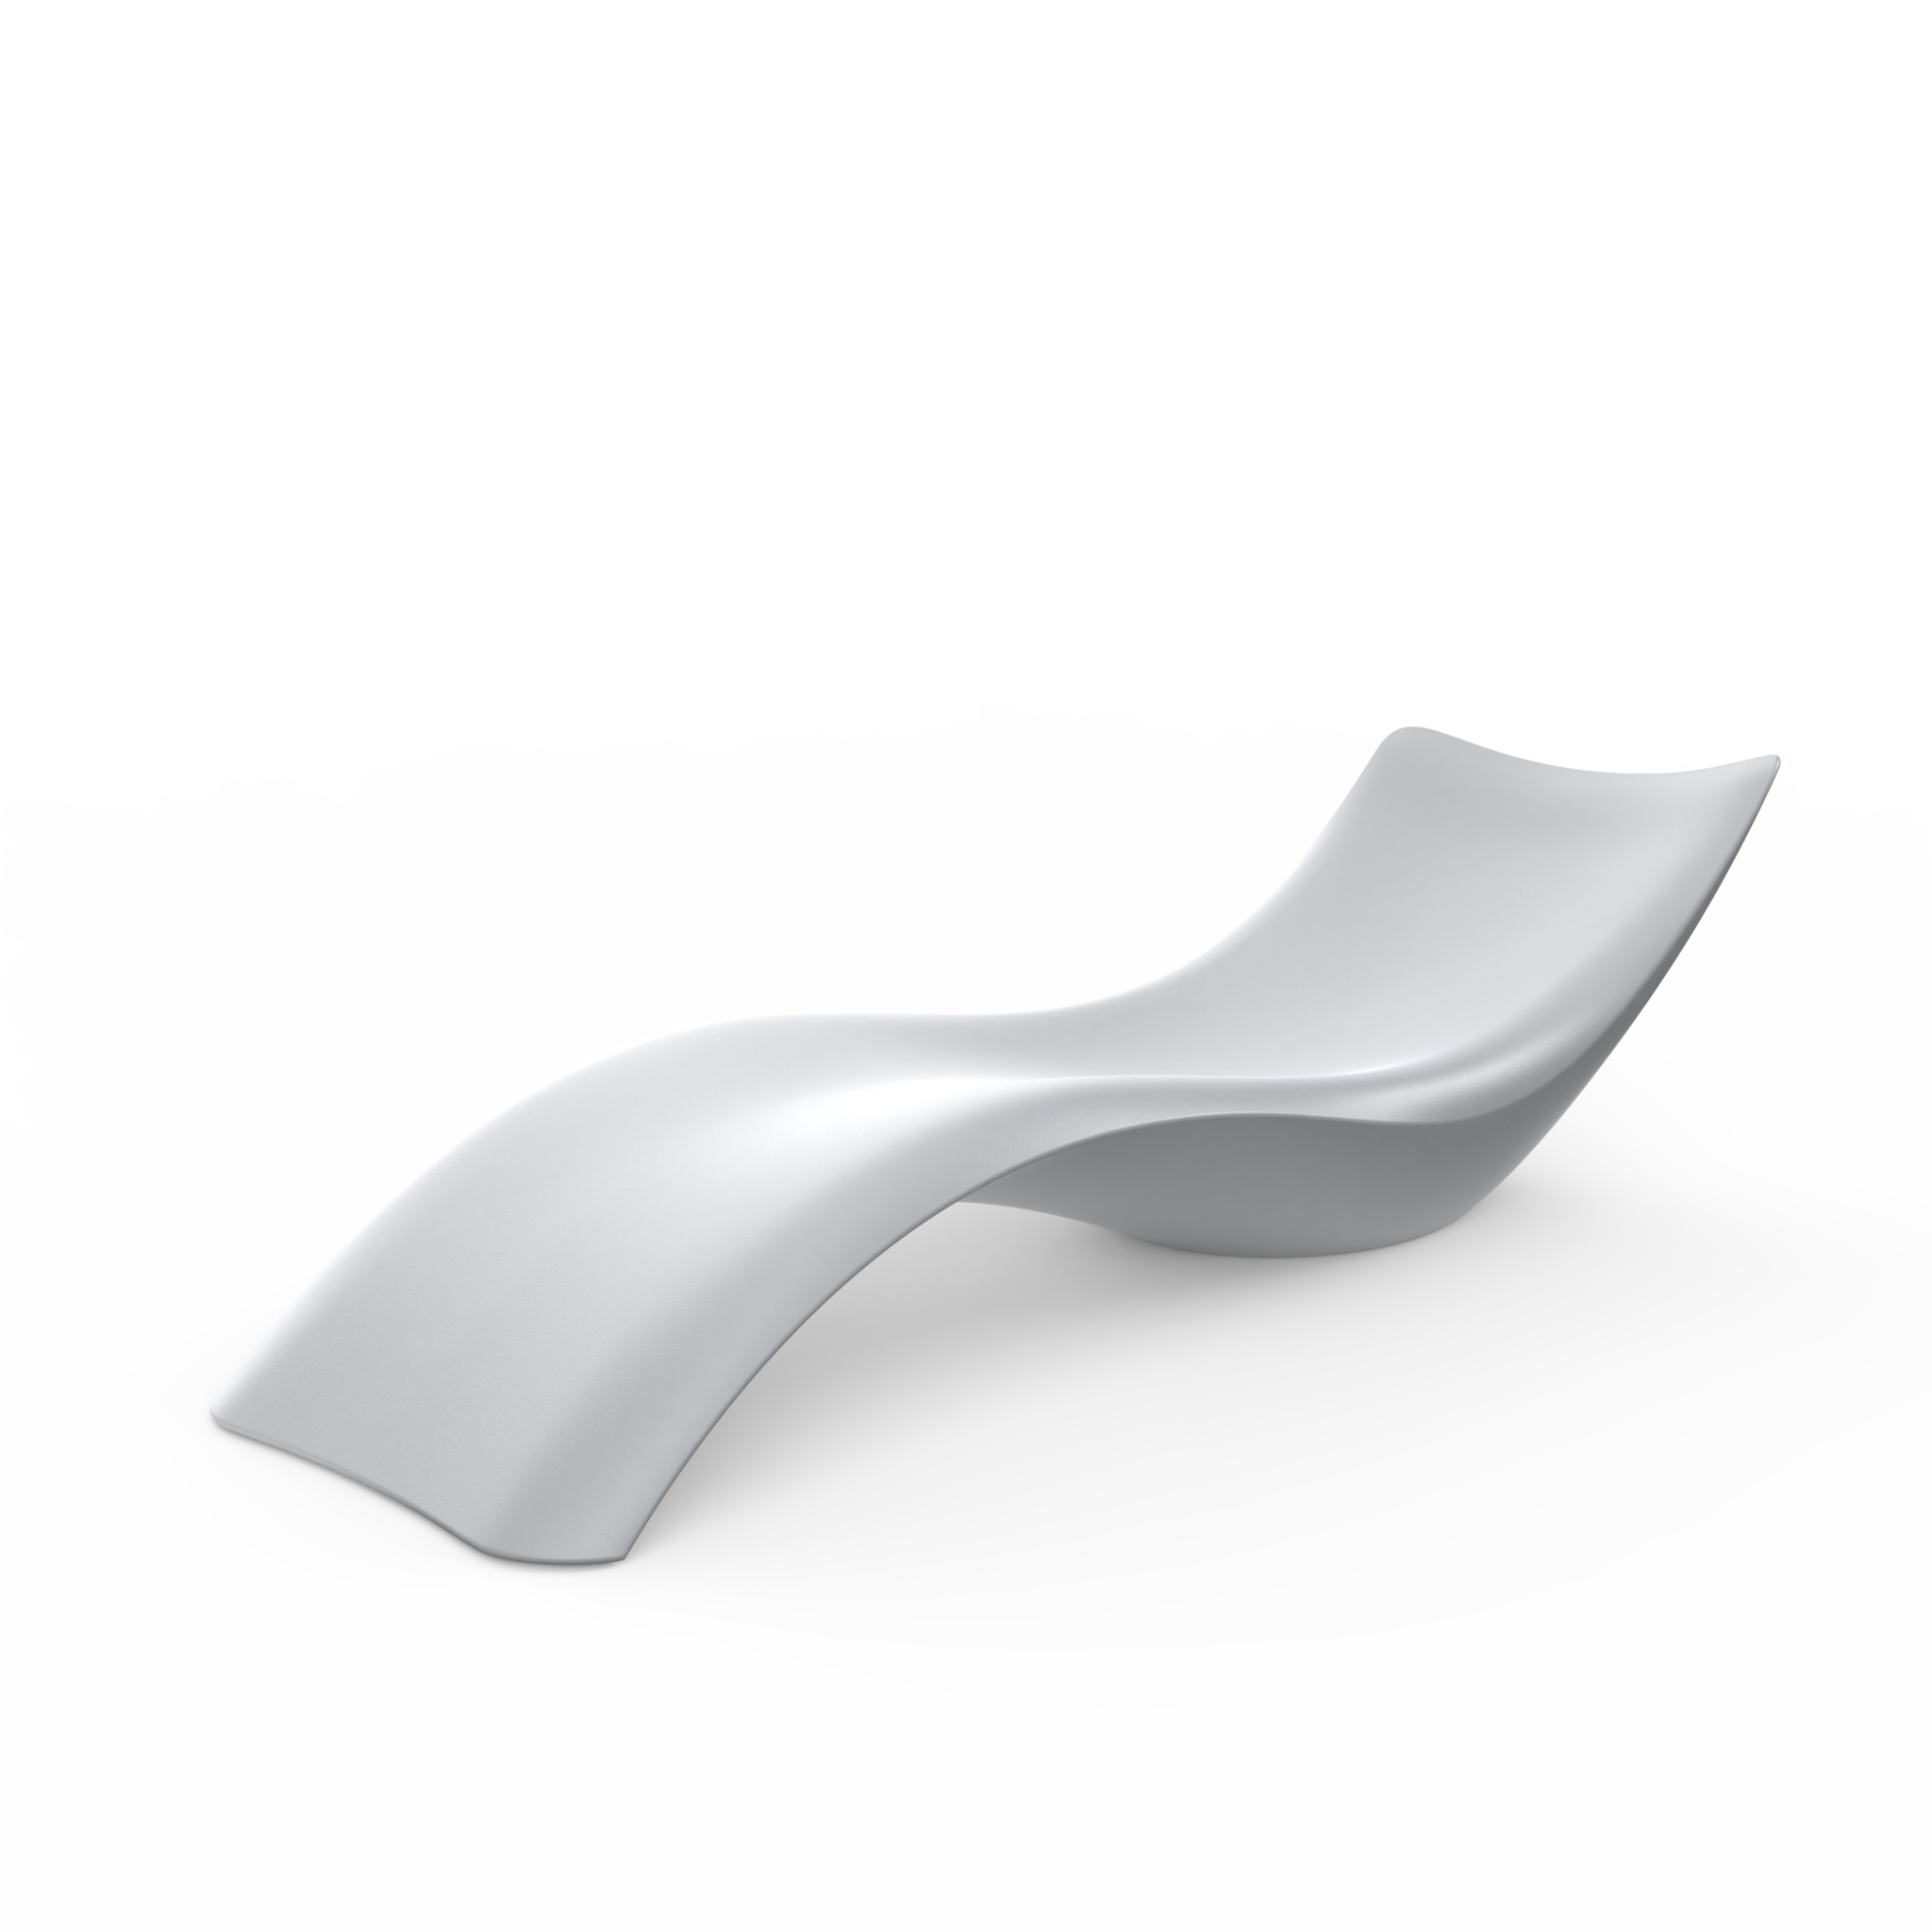 Шезлонг LIW Unpool для бассейна (лежак), 3D-пластик (полиэтилен), цветной (Concrete Gray)